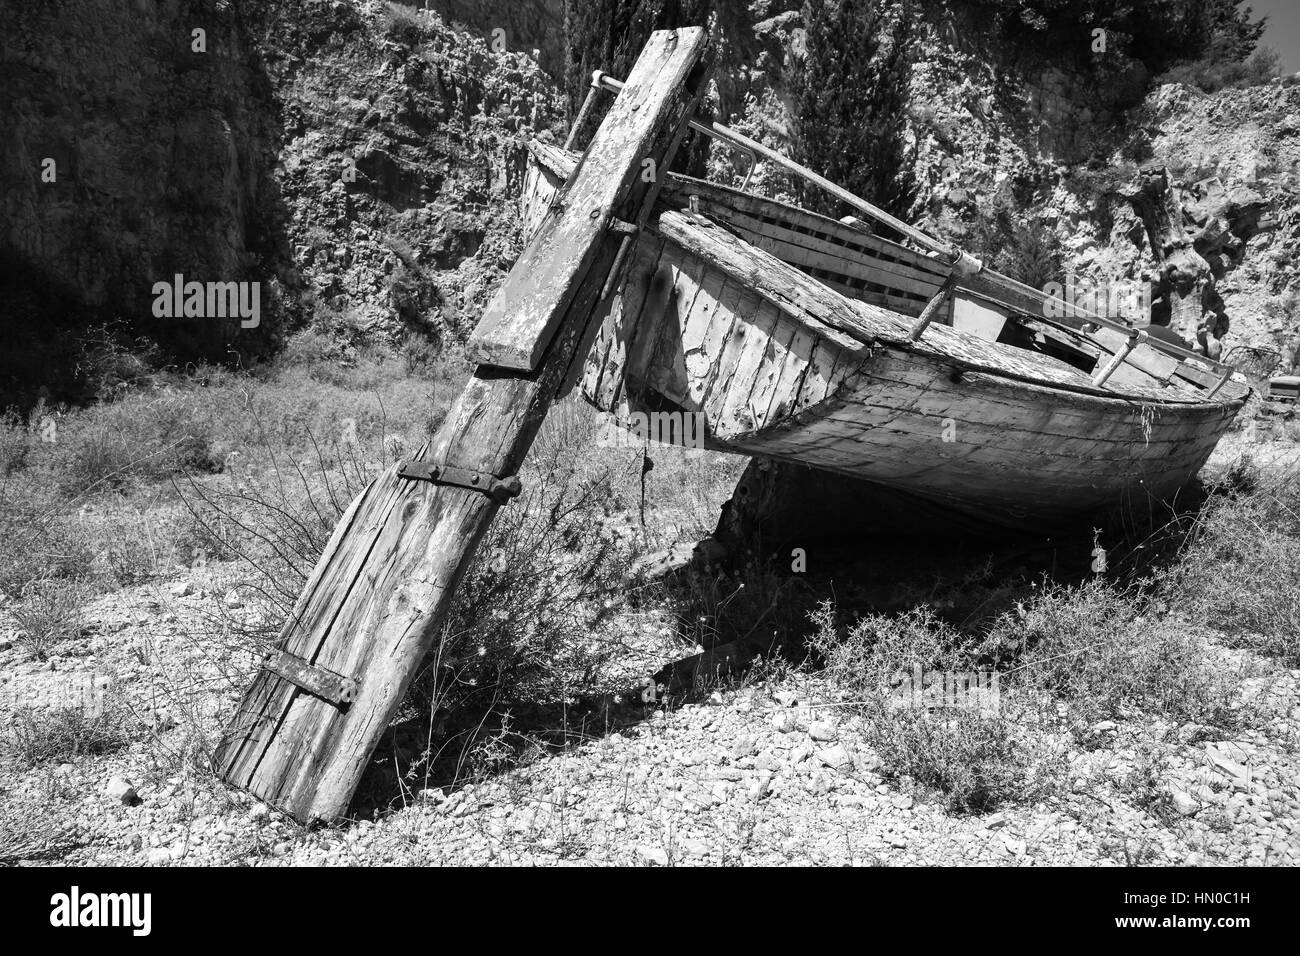 Vieux bateau de pêche en bois sec abandonné se pose sur le sol. Photo en noir et blanc Banque D'Images